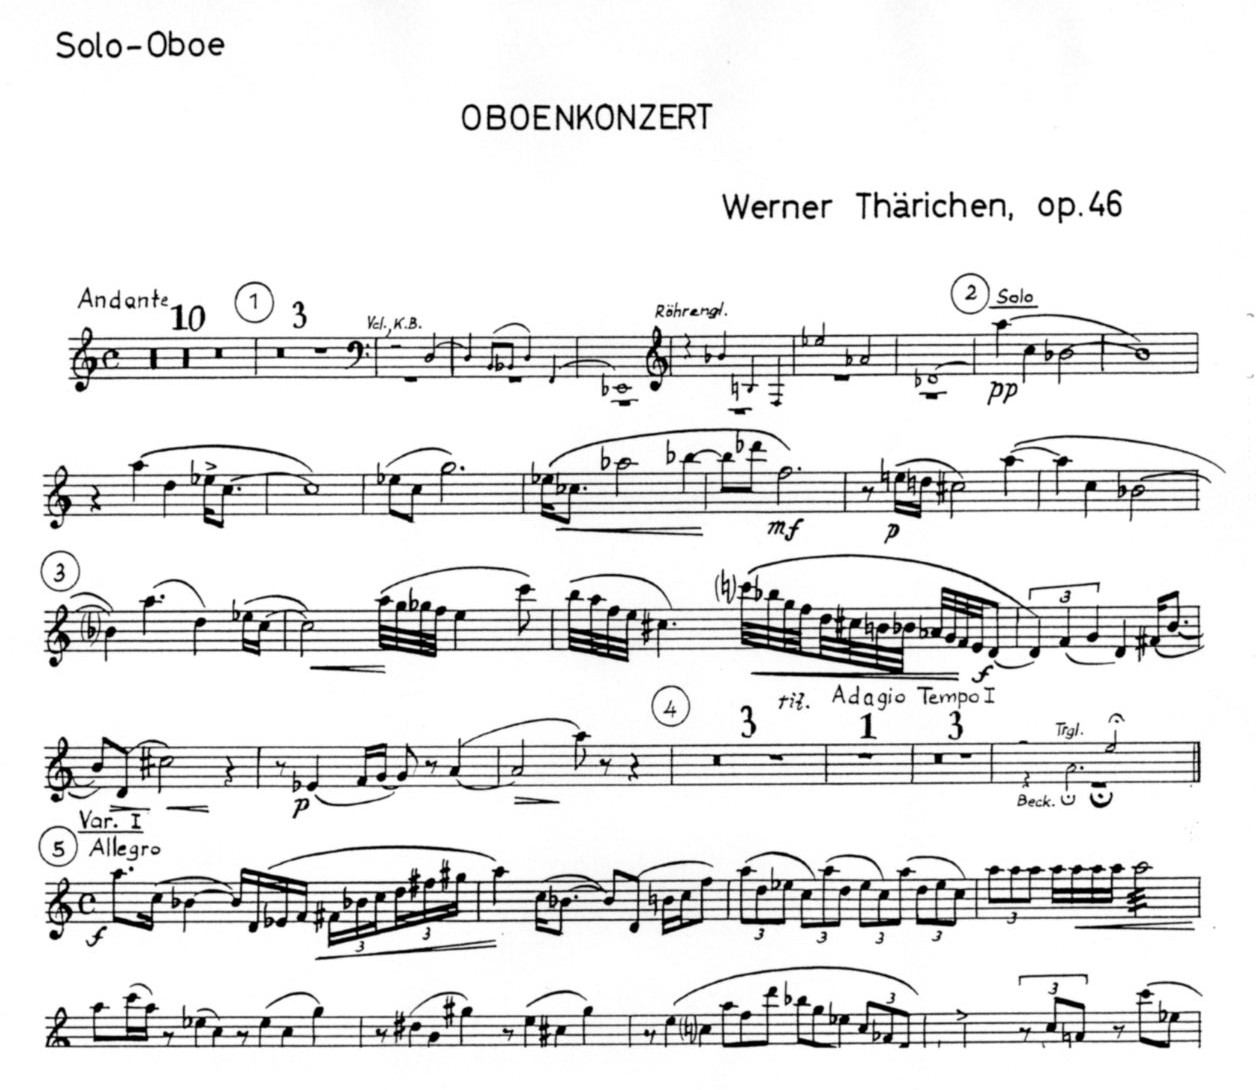 W. Thärichen: Oboenkonzert Opus 46<br>Solostimme